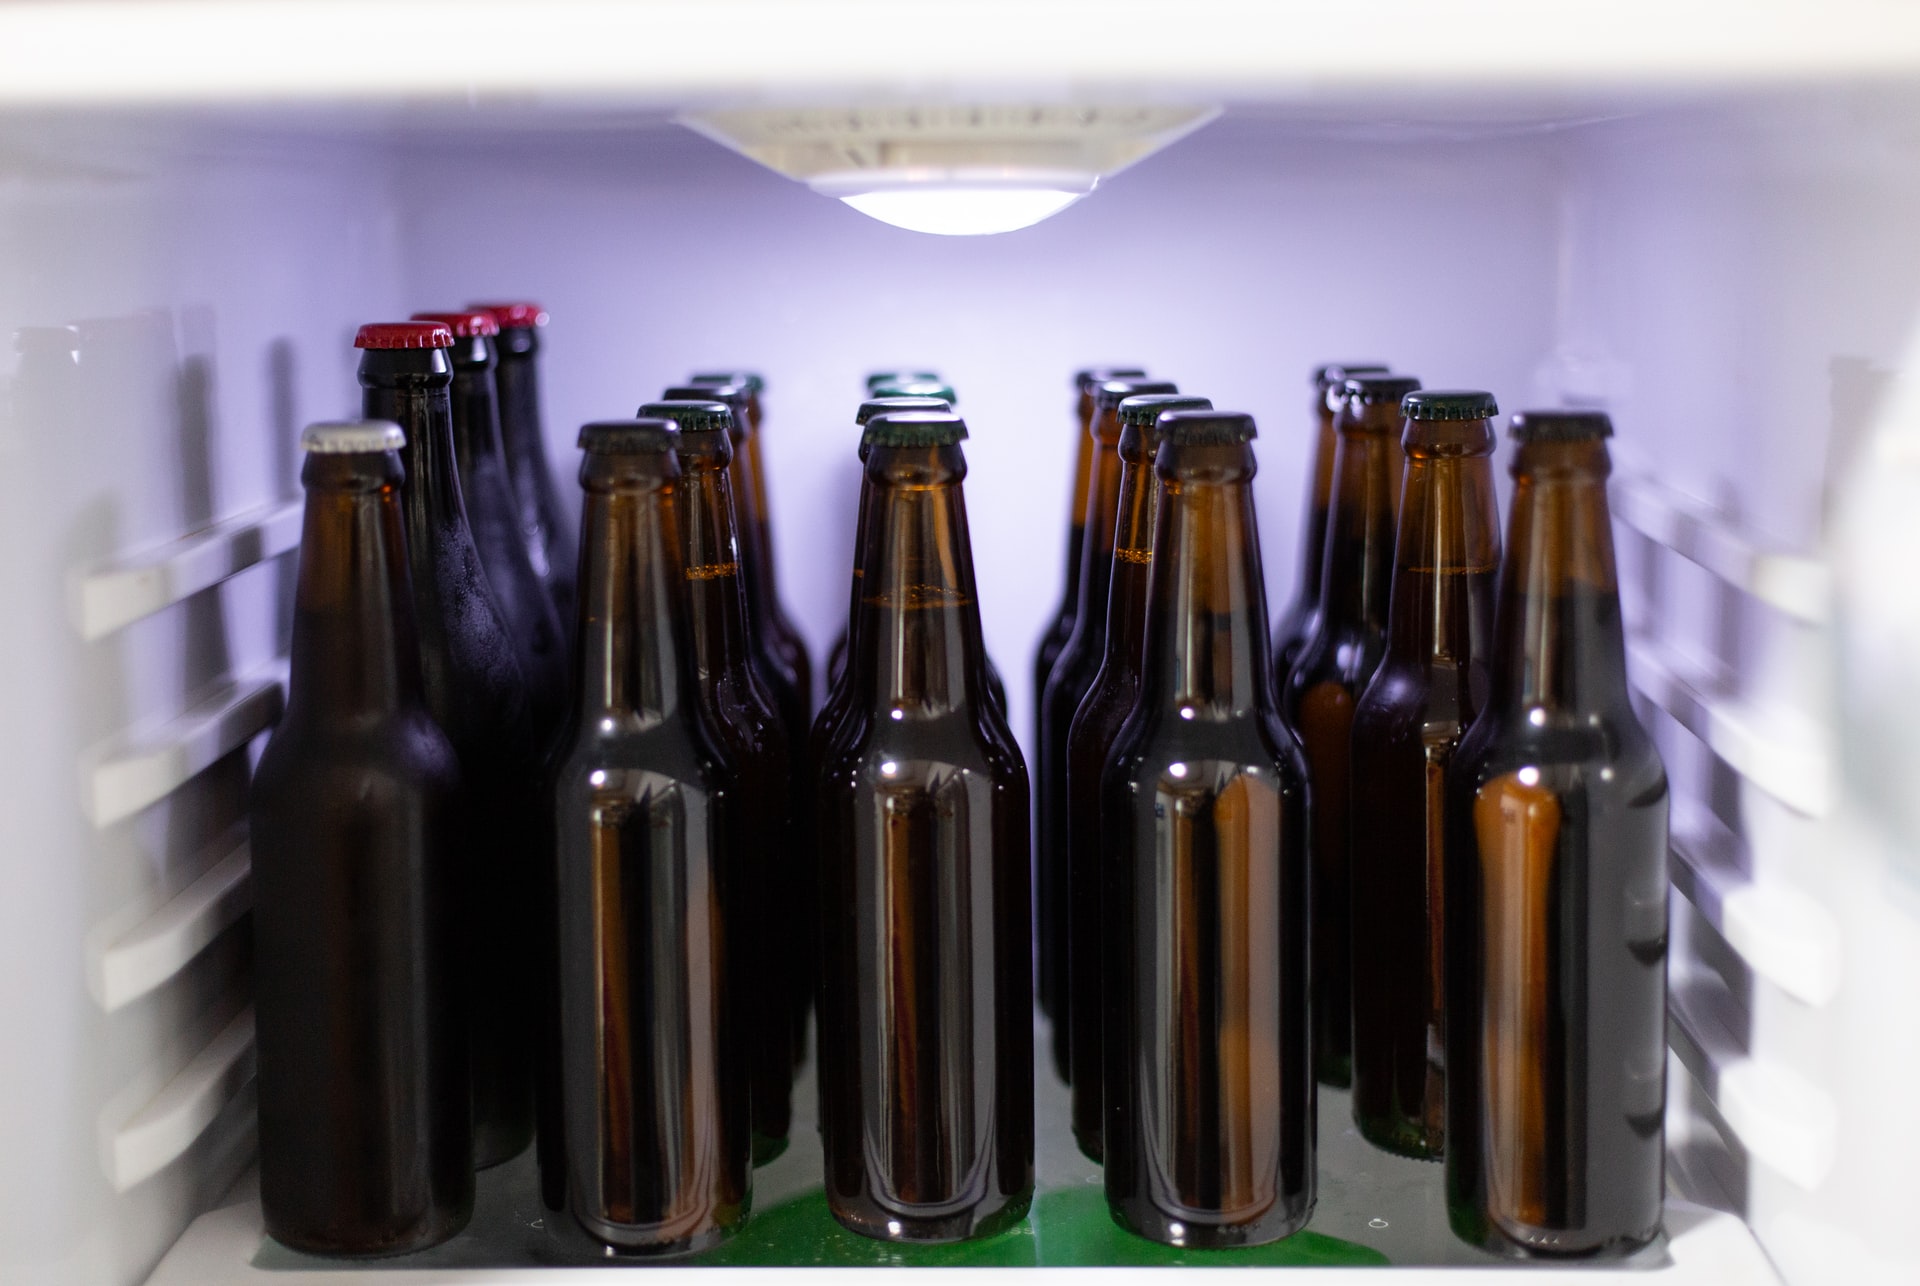 Fridge compartment full of unlabelled beer bottles